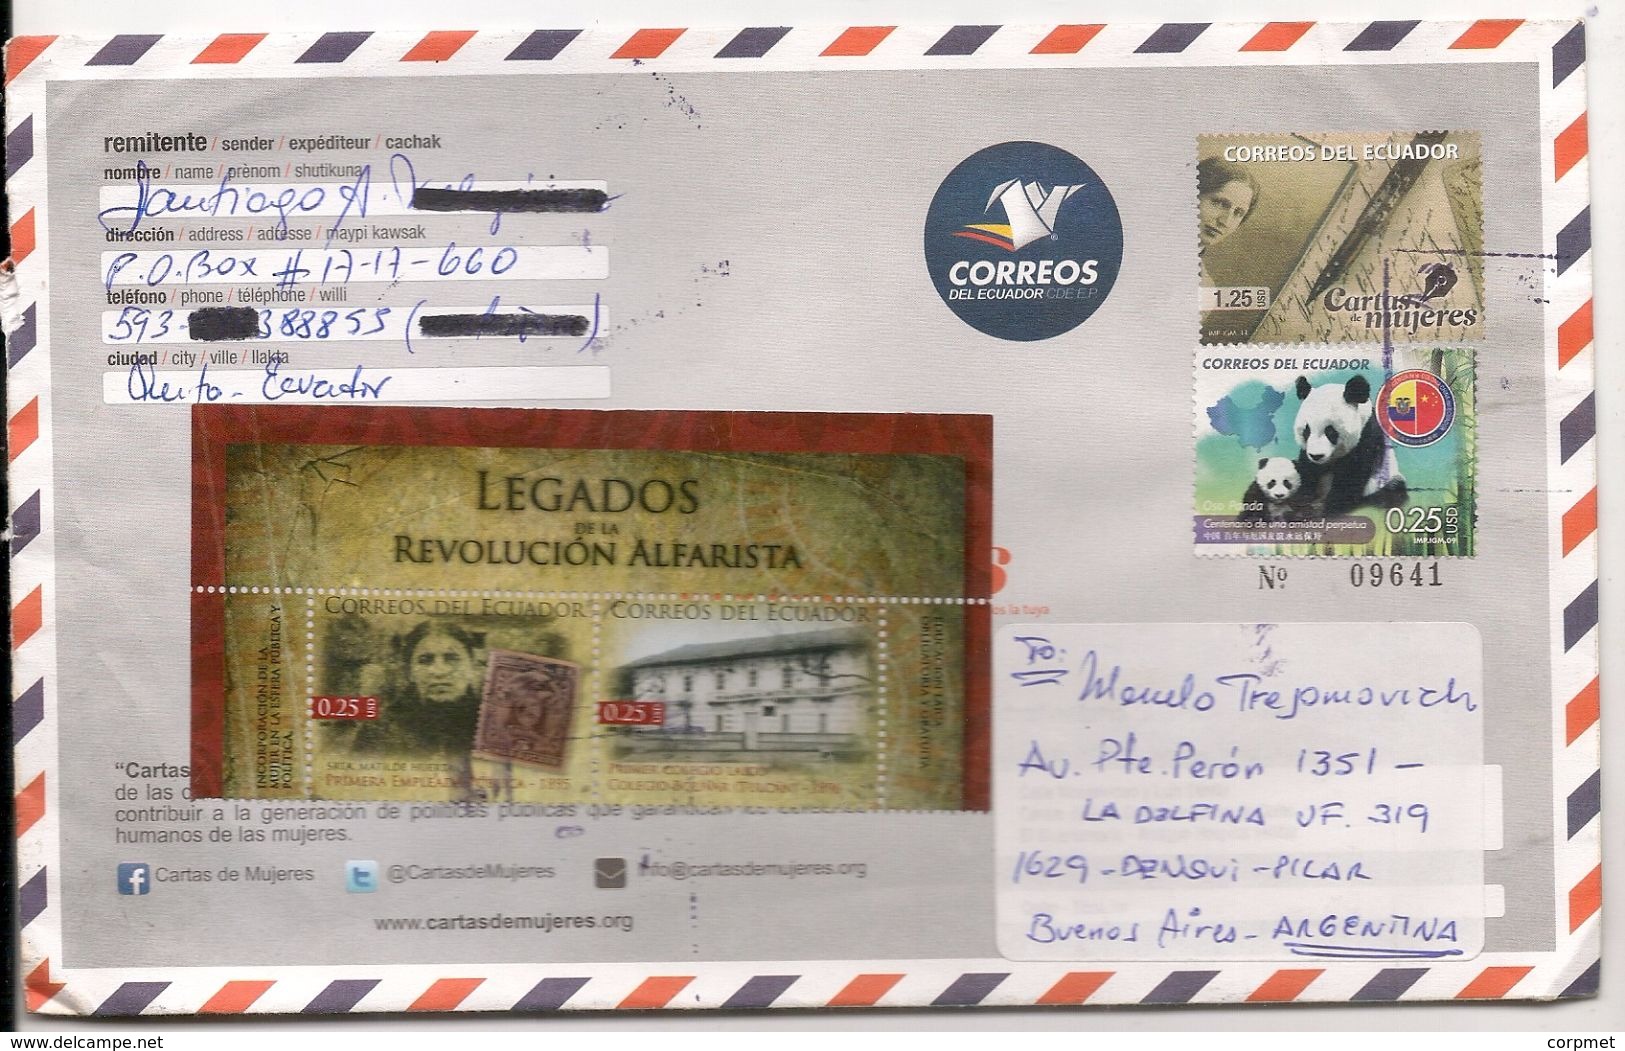 ECUADOR - Uprated Entire Cover LETTERS OF WOMEN + PANDA Bear (Ecuador-China Friendship Stamp) + 2 ALFARO REVOLUTION St - Ecuador